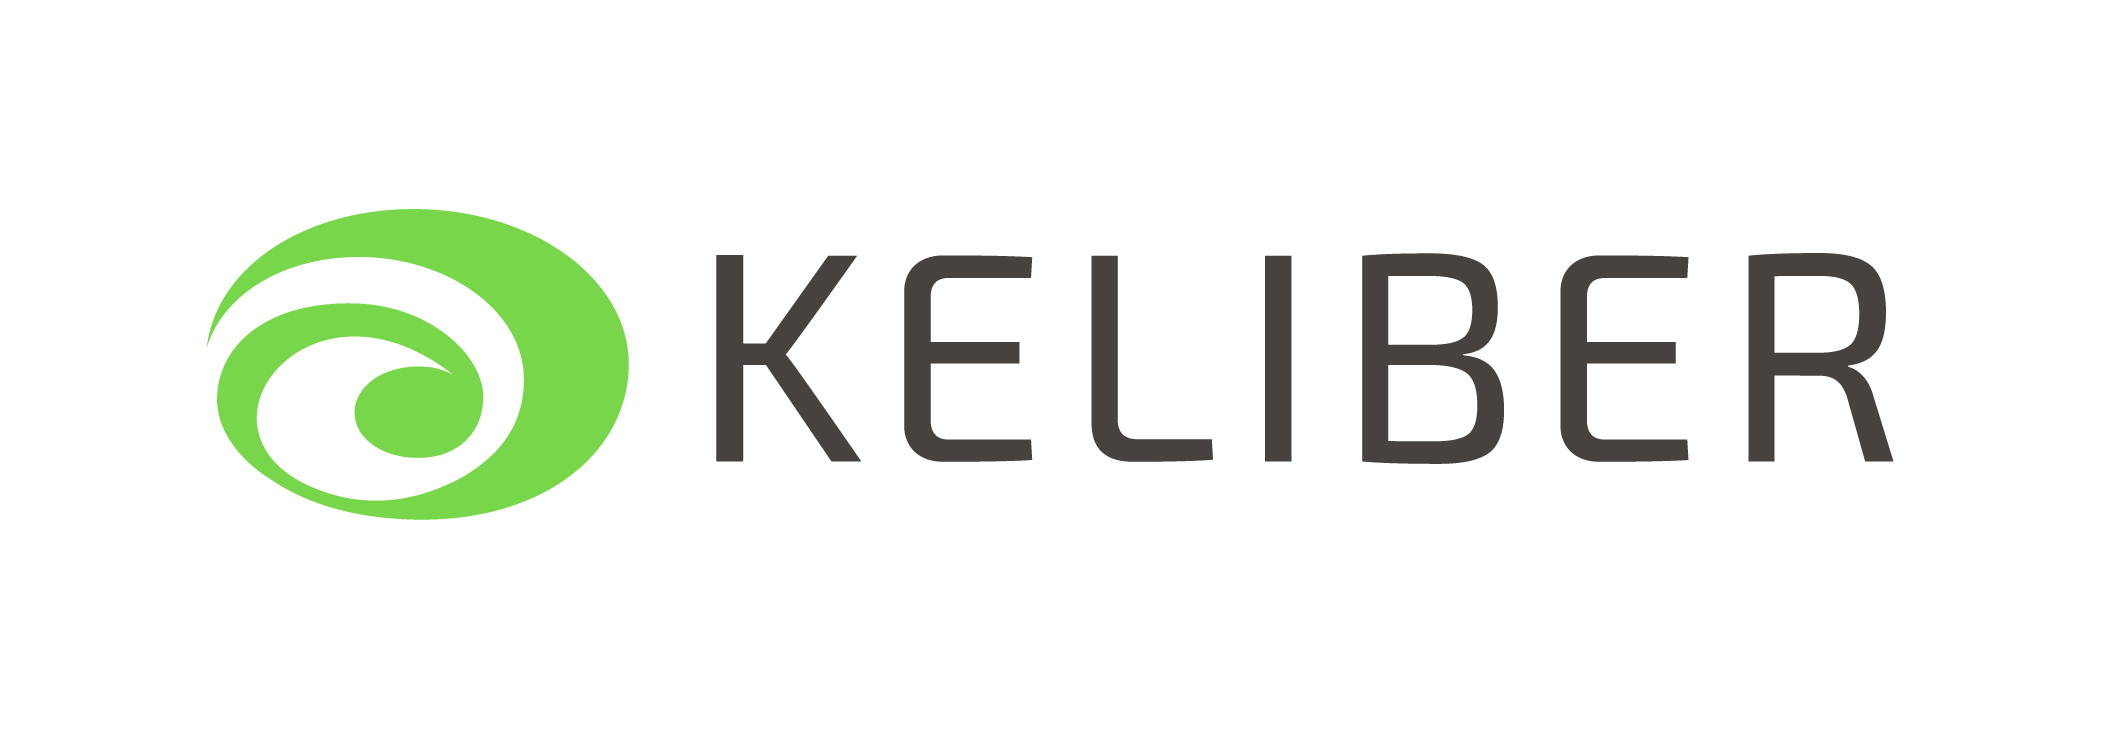 Keliber logo (rgb, jpg) (ID 21177)